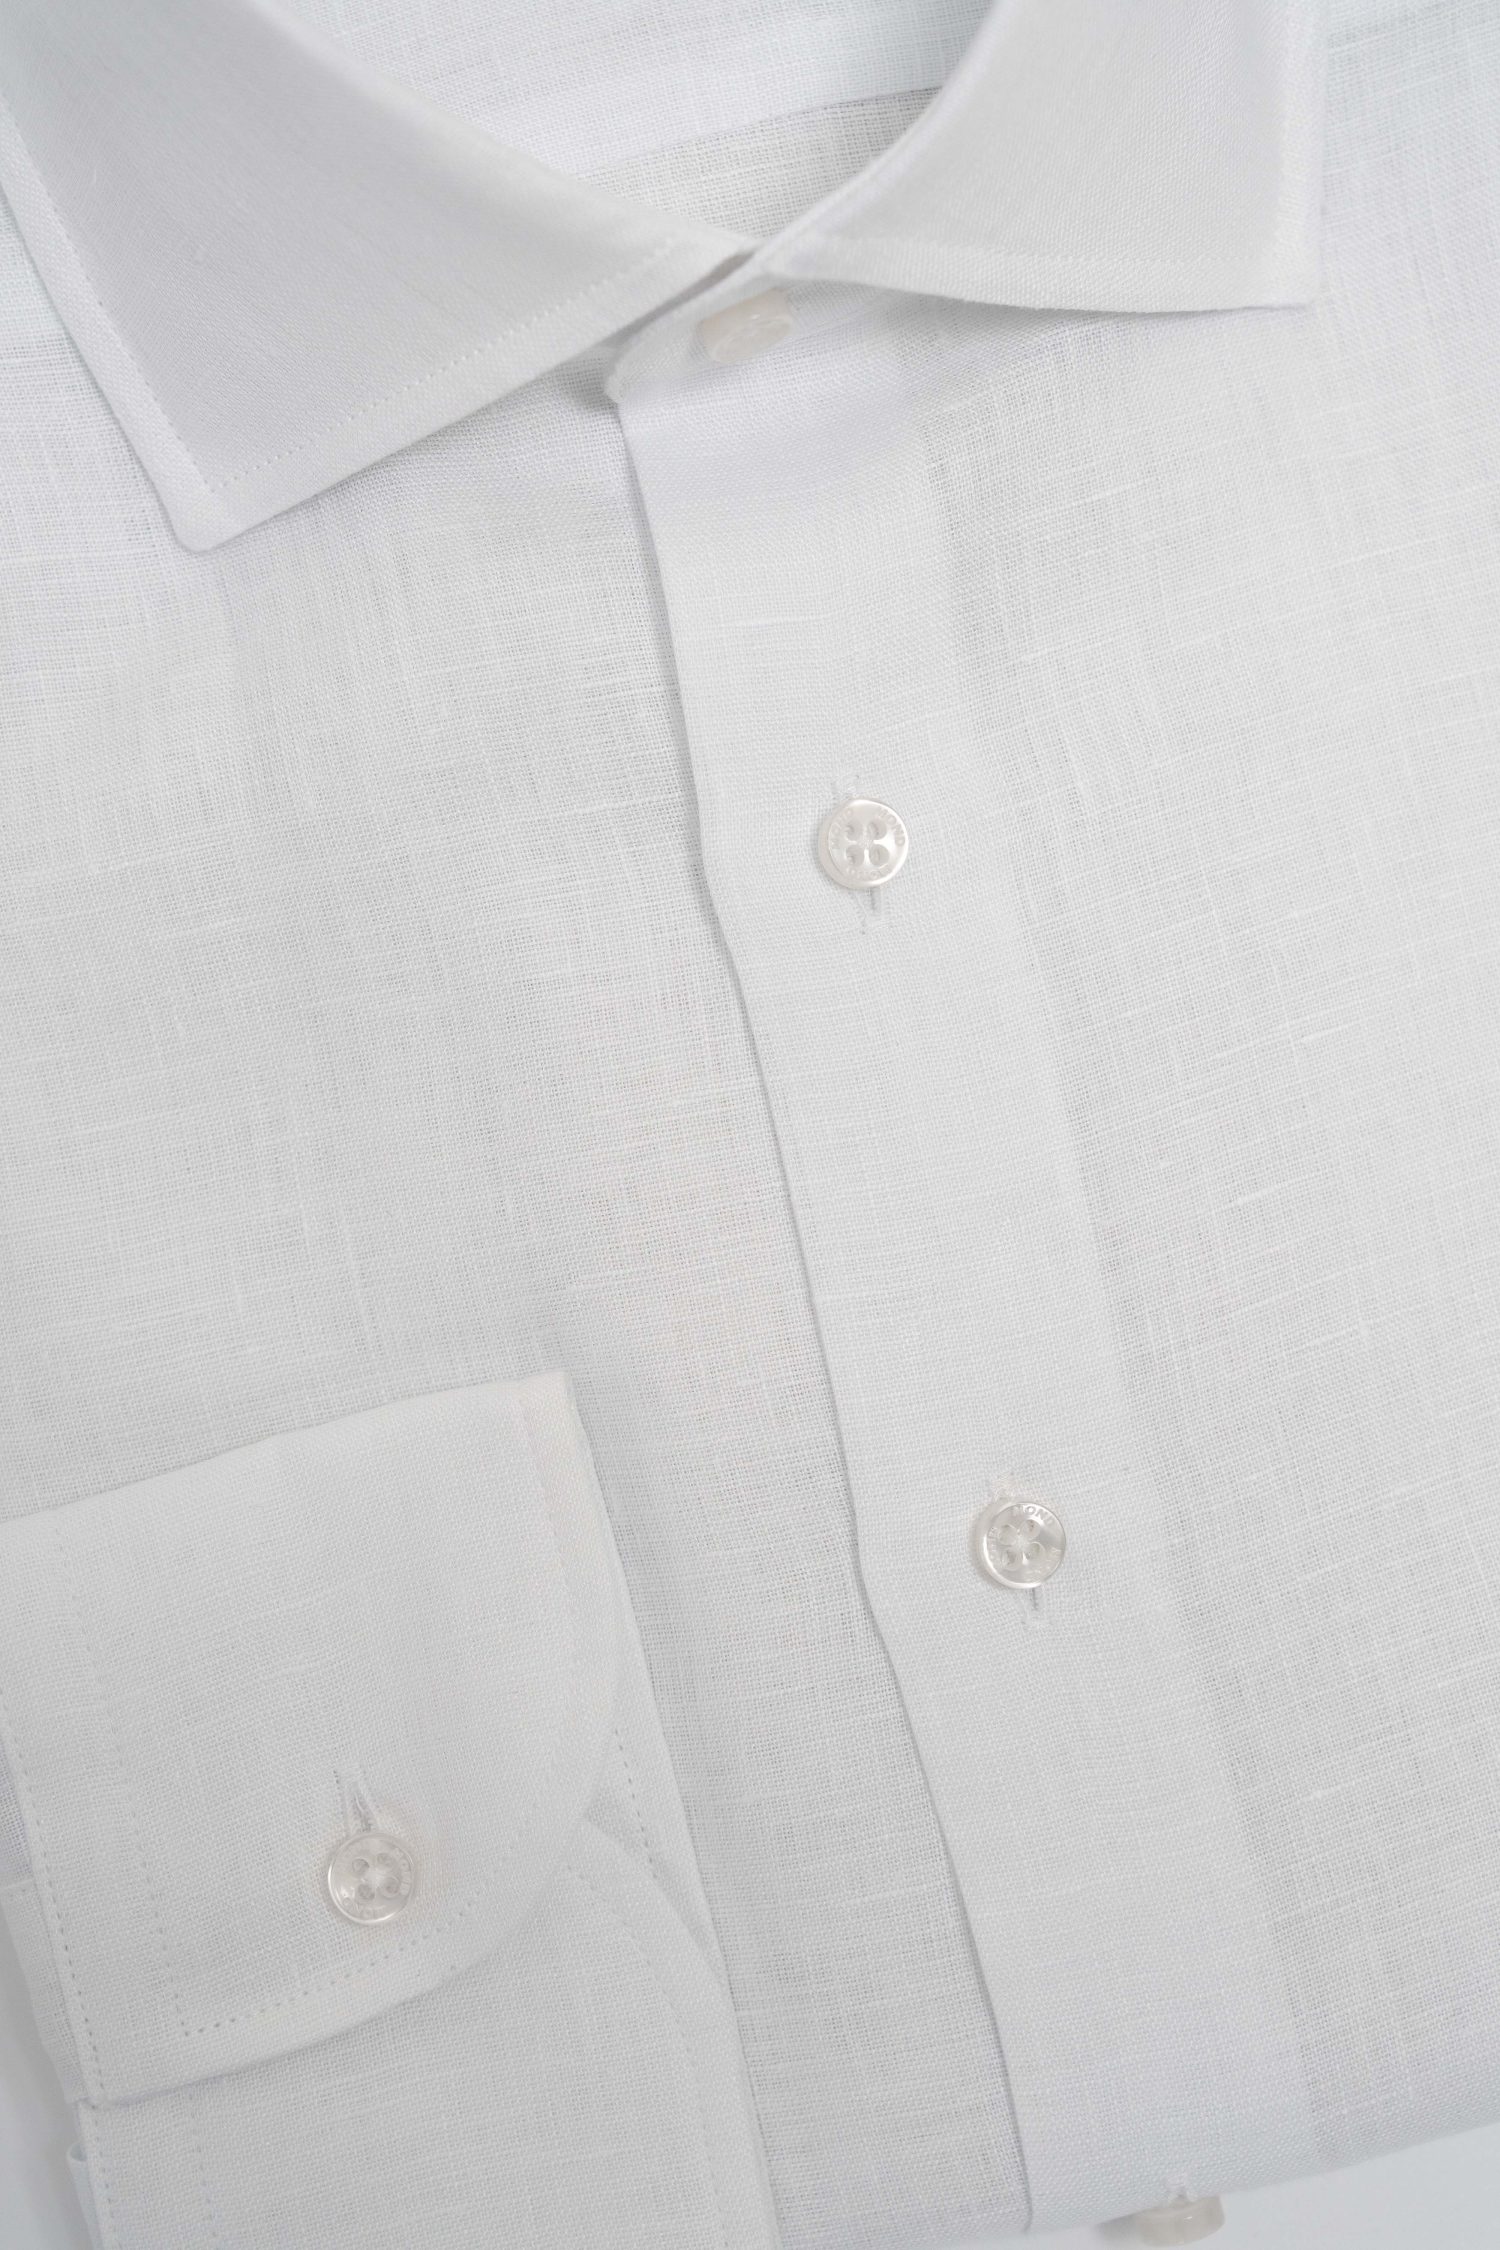 Mond of Copenhagen custom made white linen shirt